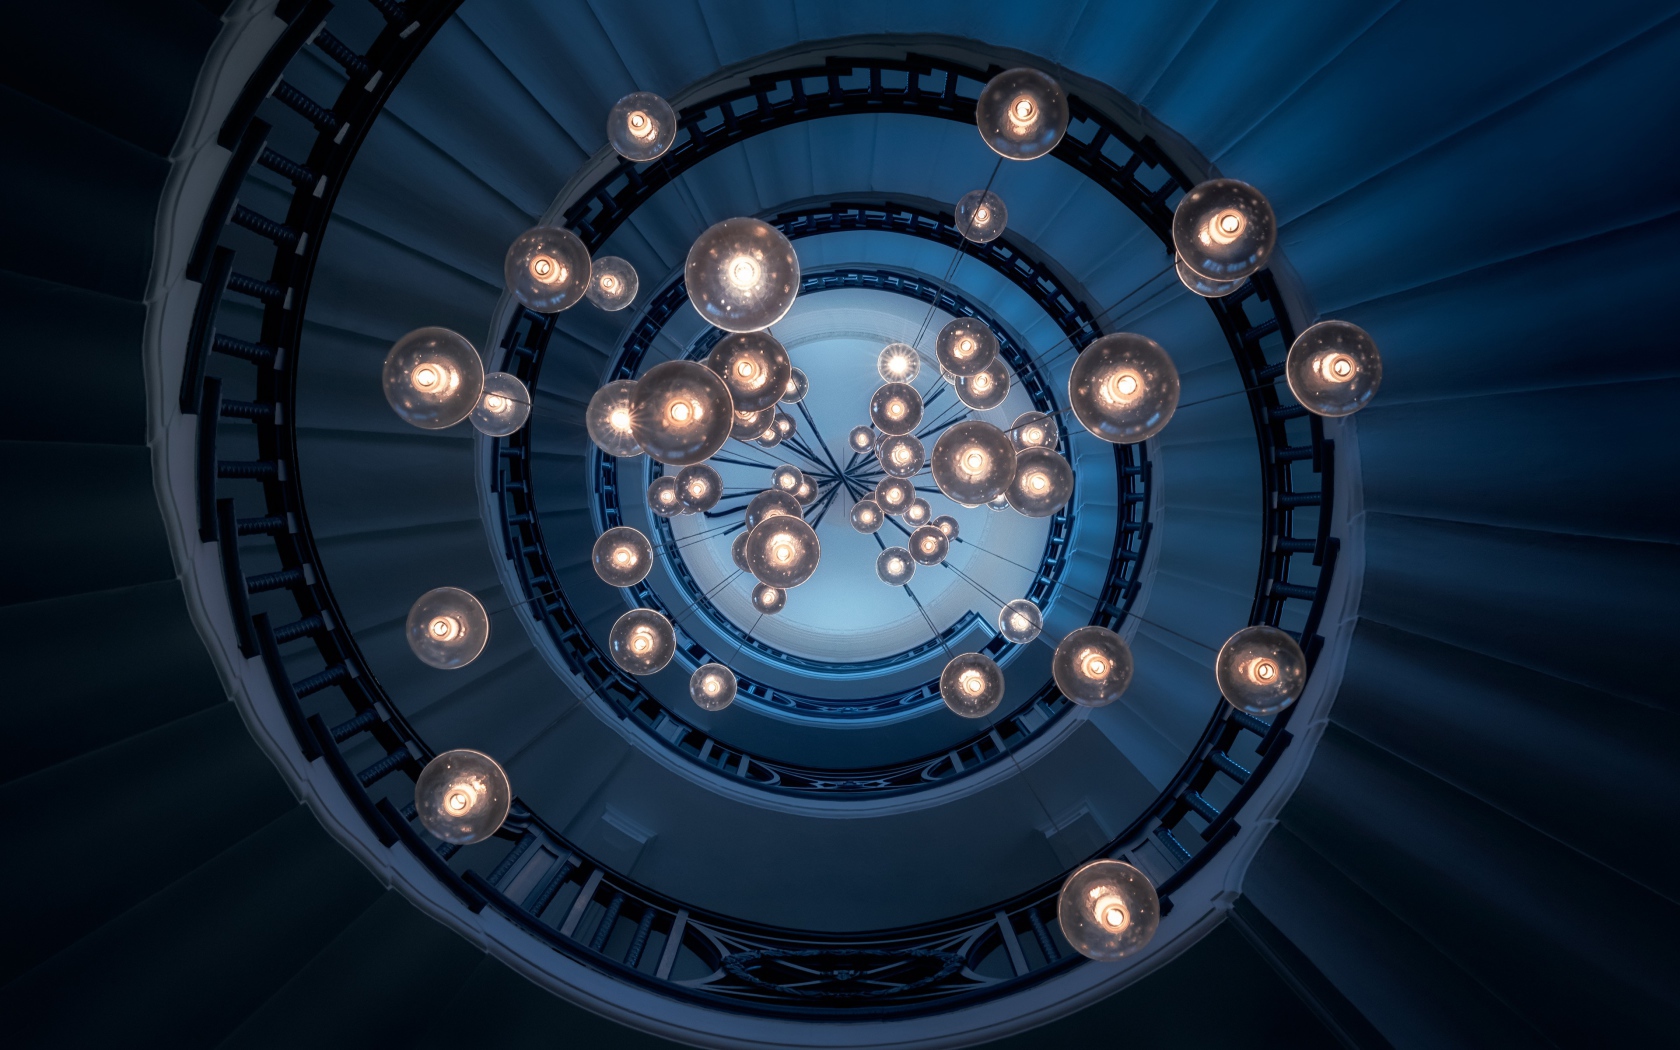 Большая люстра с висячими лампочками над лестницей